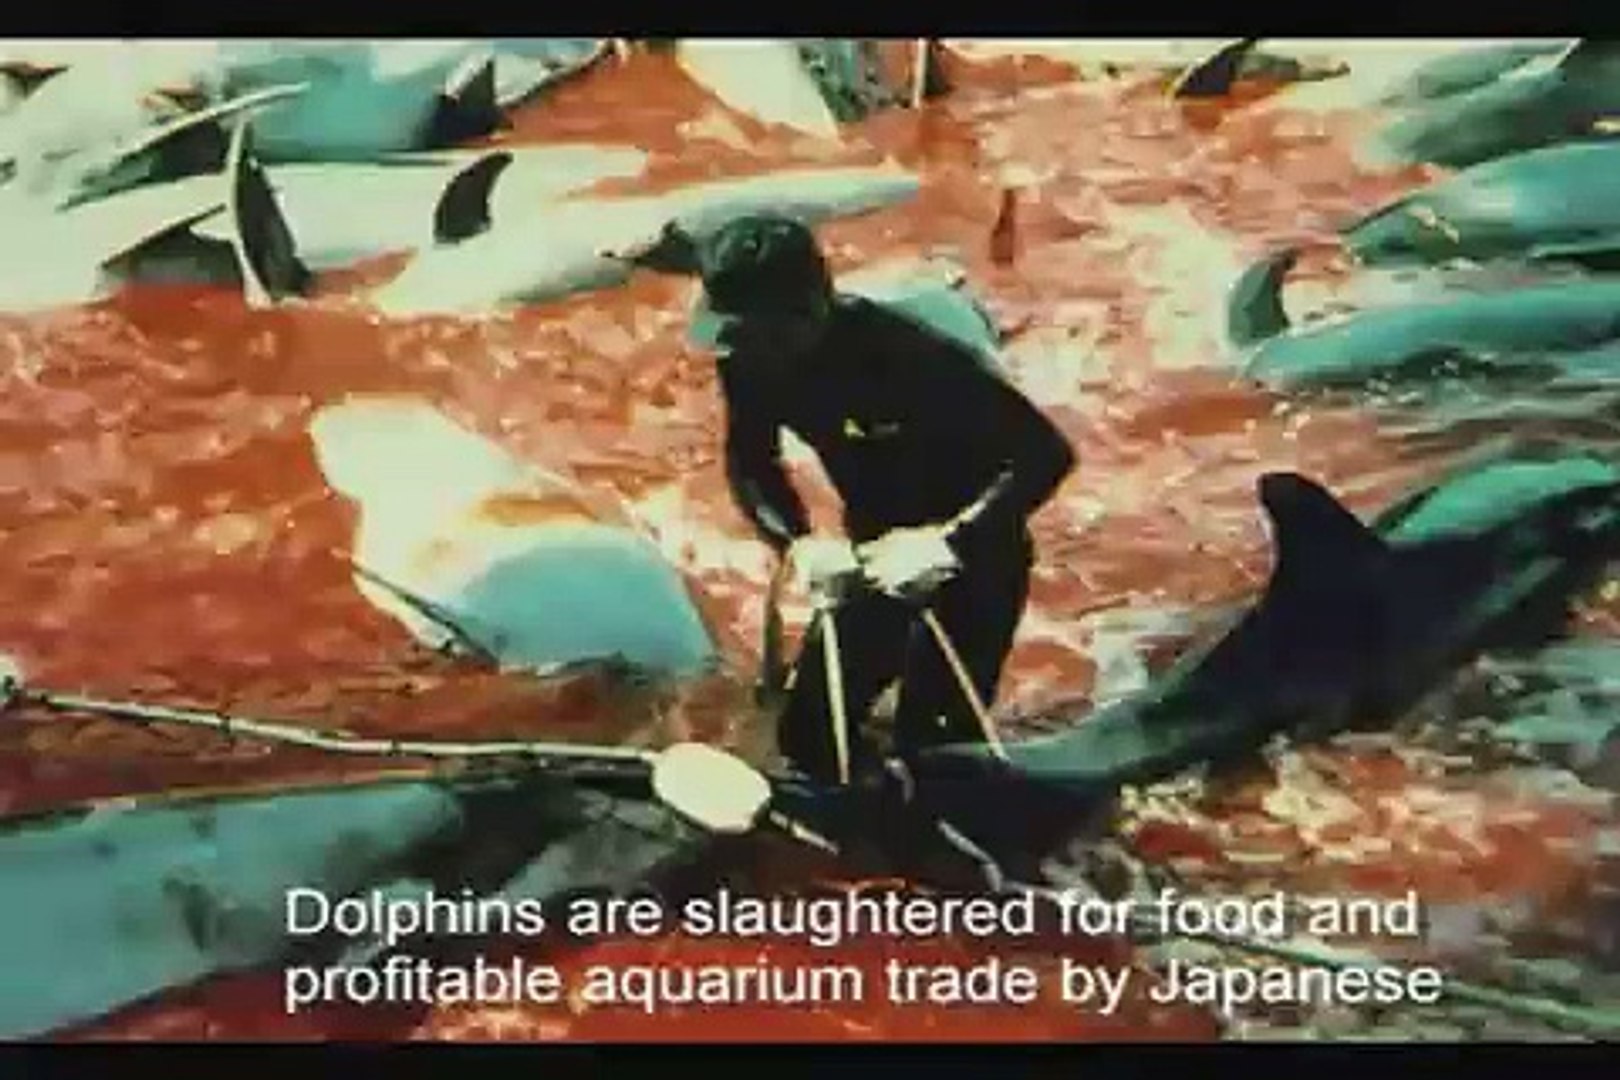 Dolphin Show at Vancouver Aquarium: Dolphin Freedom NOT Captivity!